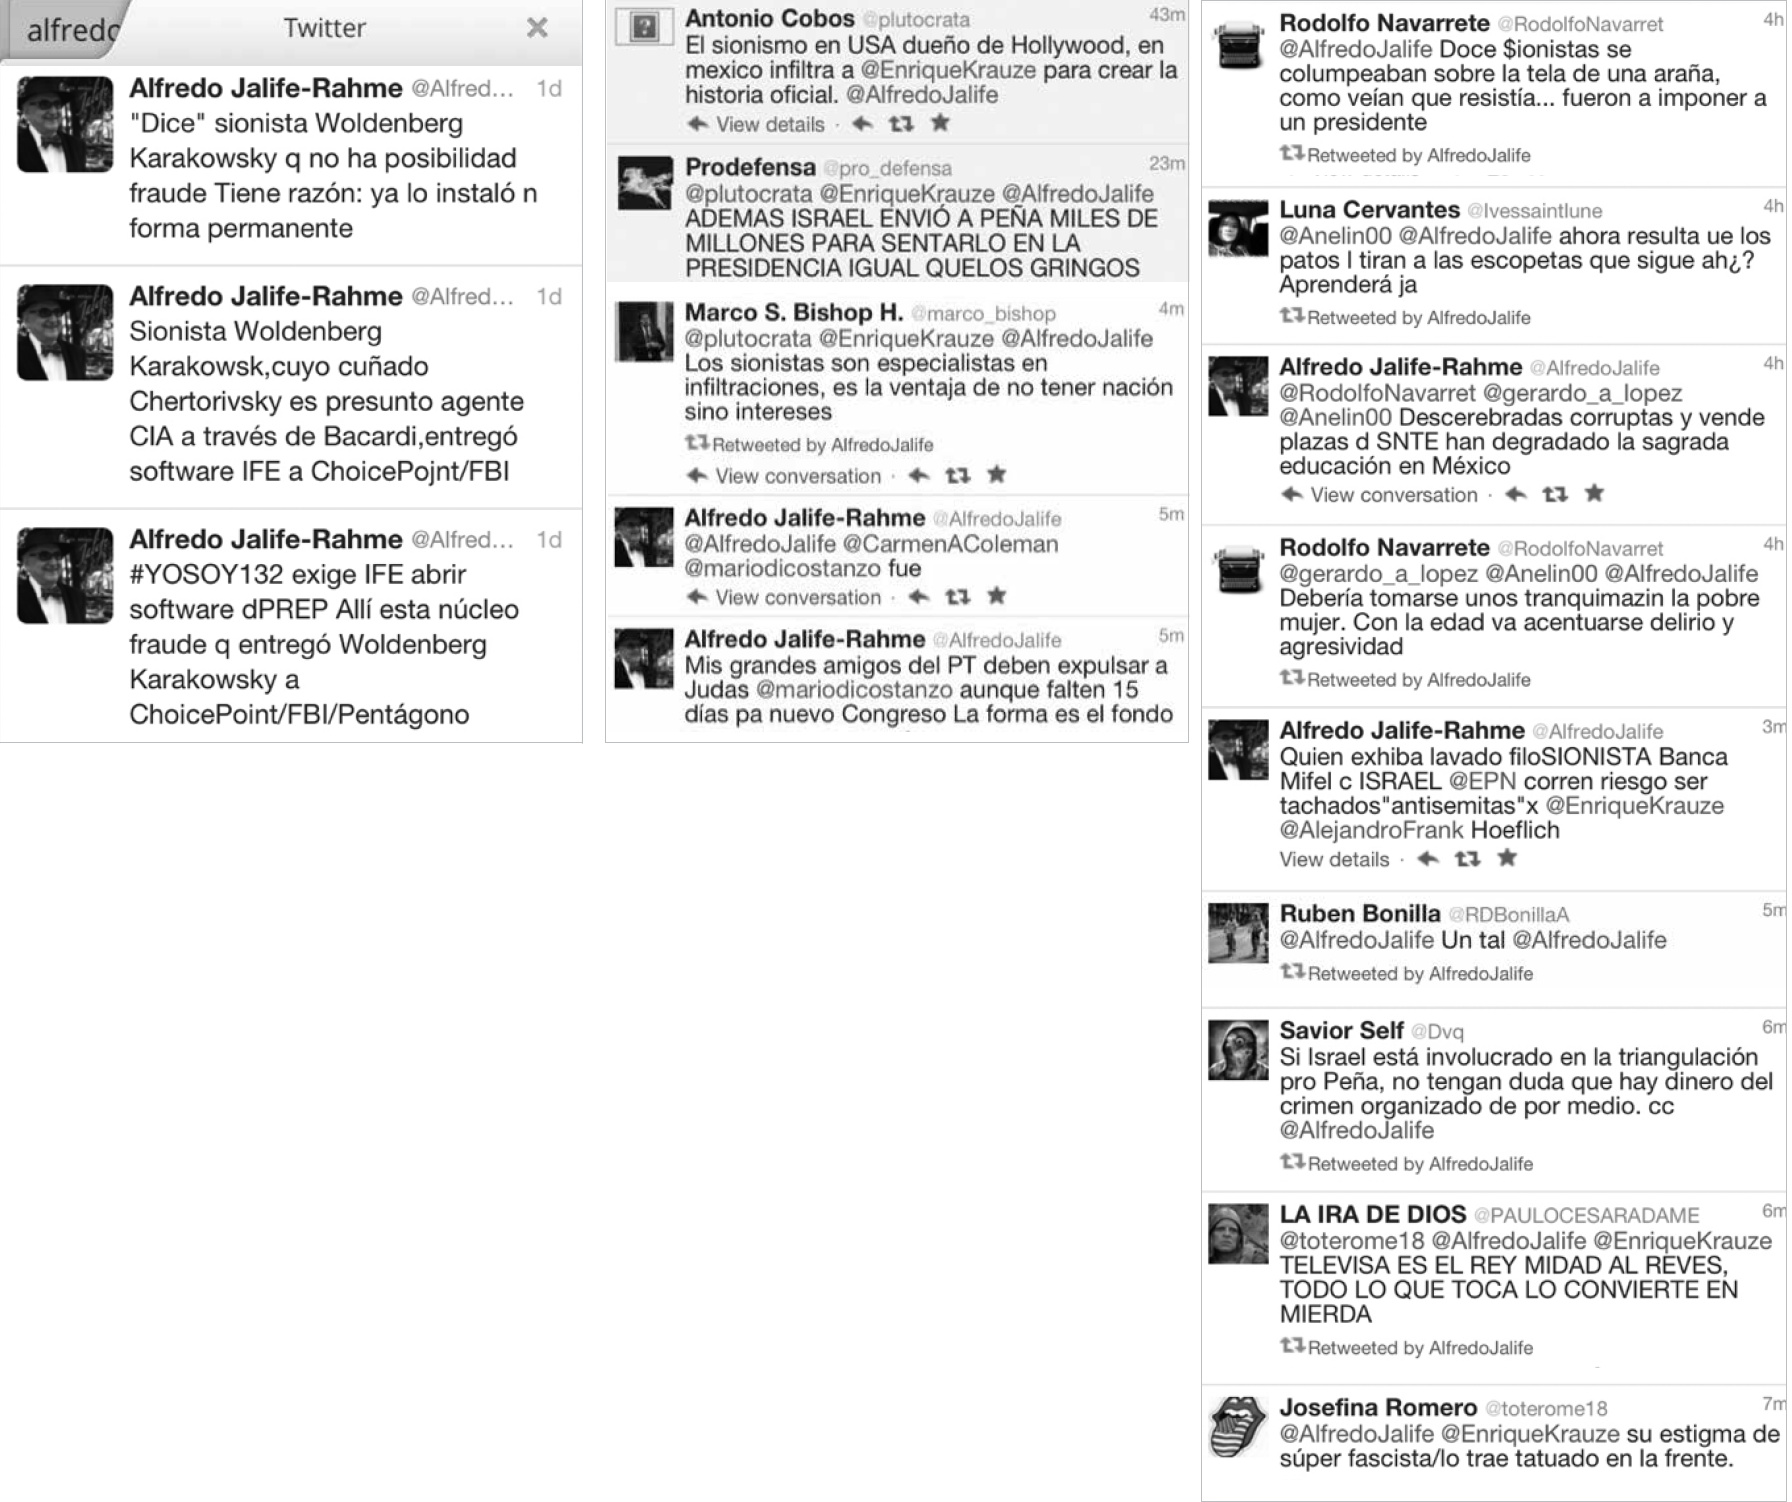 
							Conversaciones en Twitter en las que se le imputa a los judíos el fraude electoral de 2012.
						